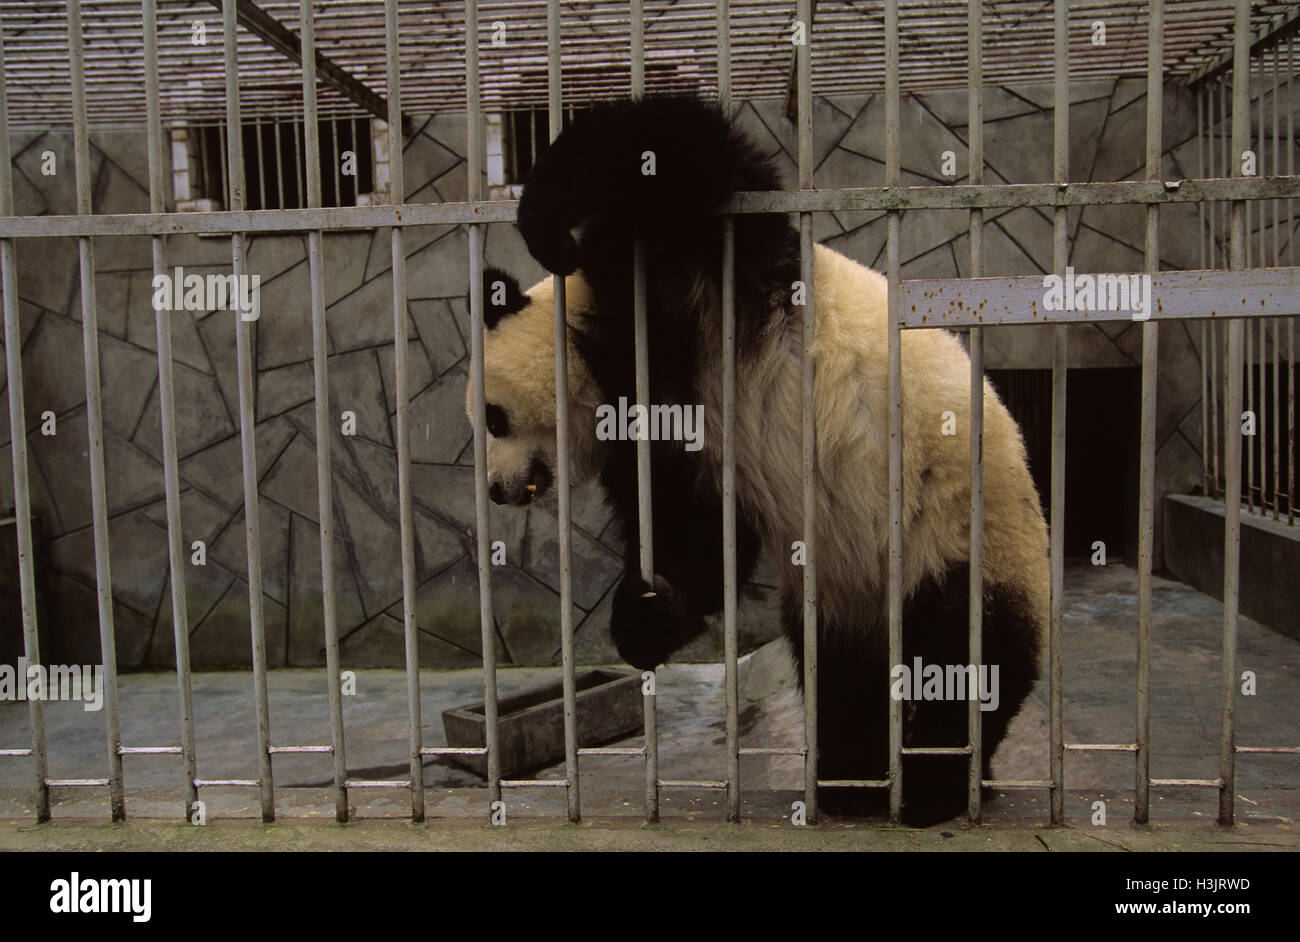 Animali in gabbia immagini e fotografie stock ad alta risoluzione - Alamy